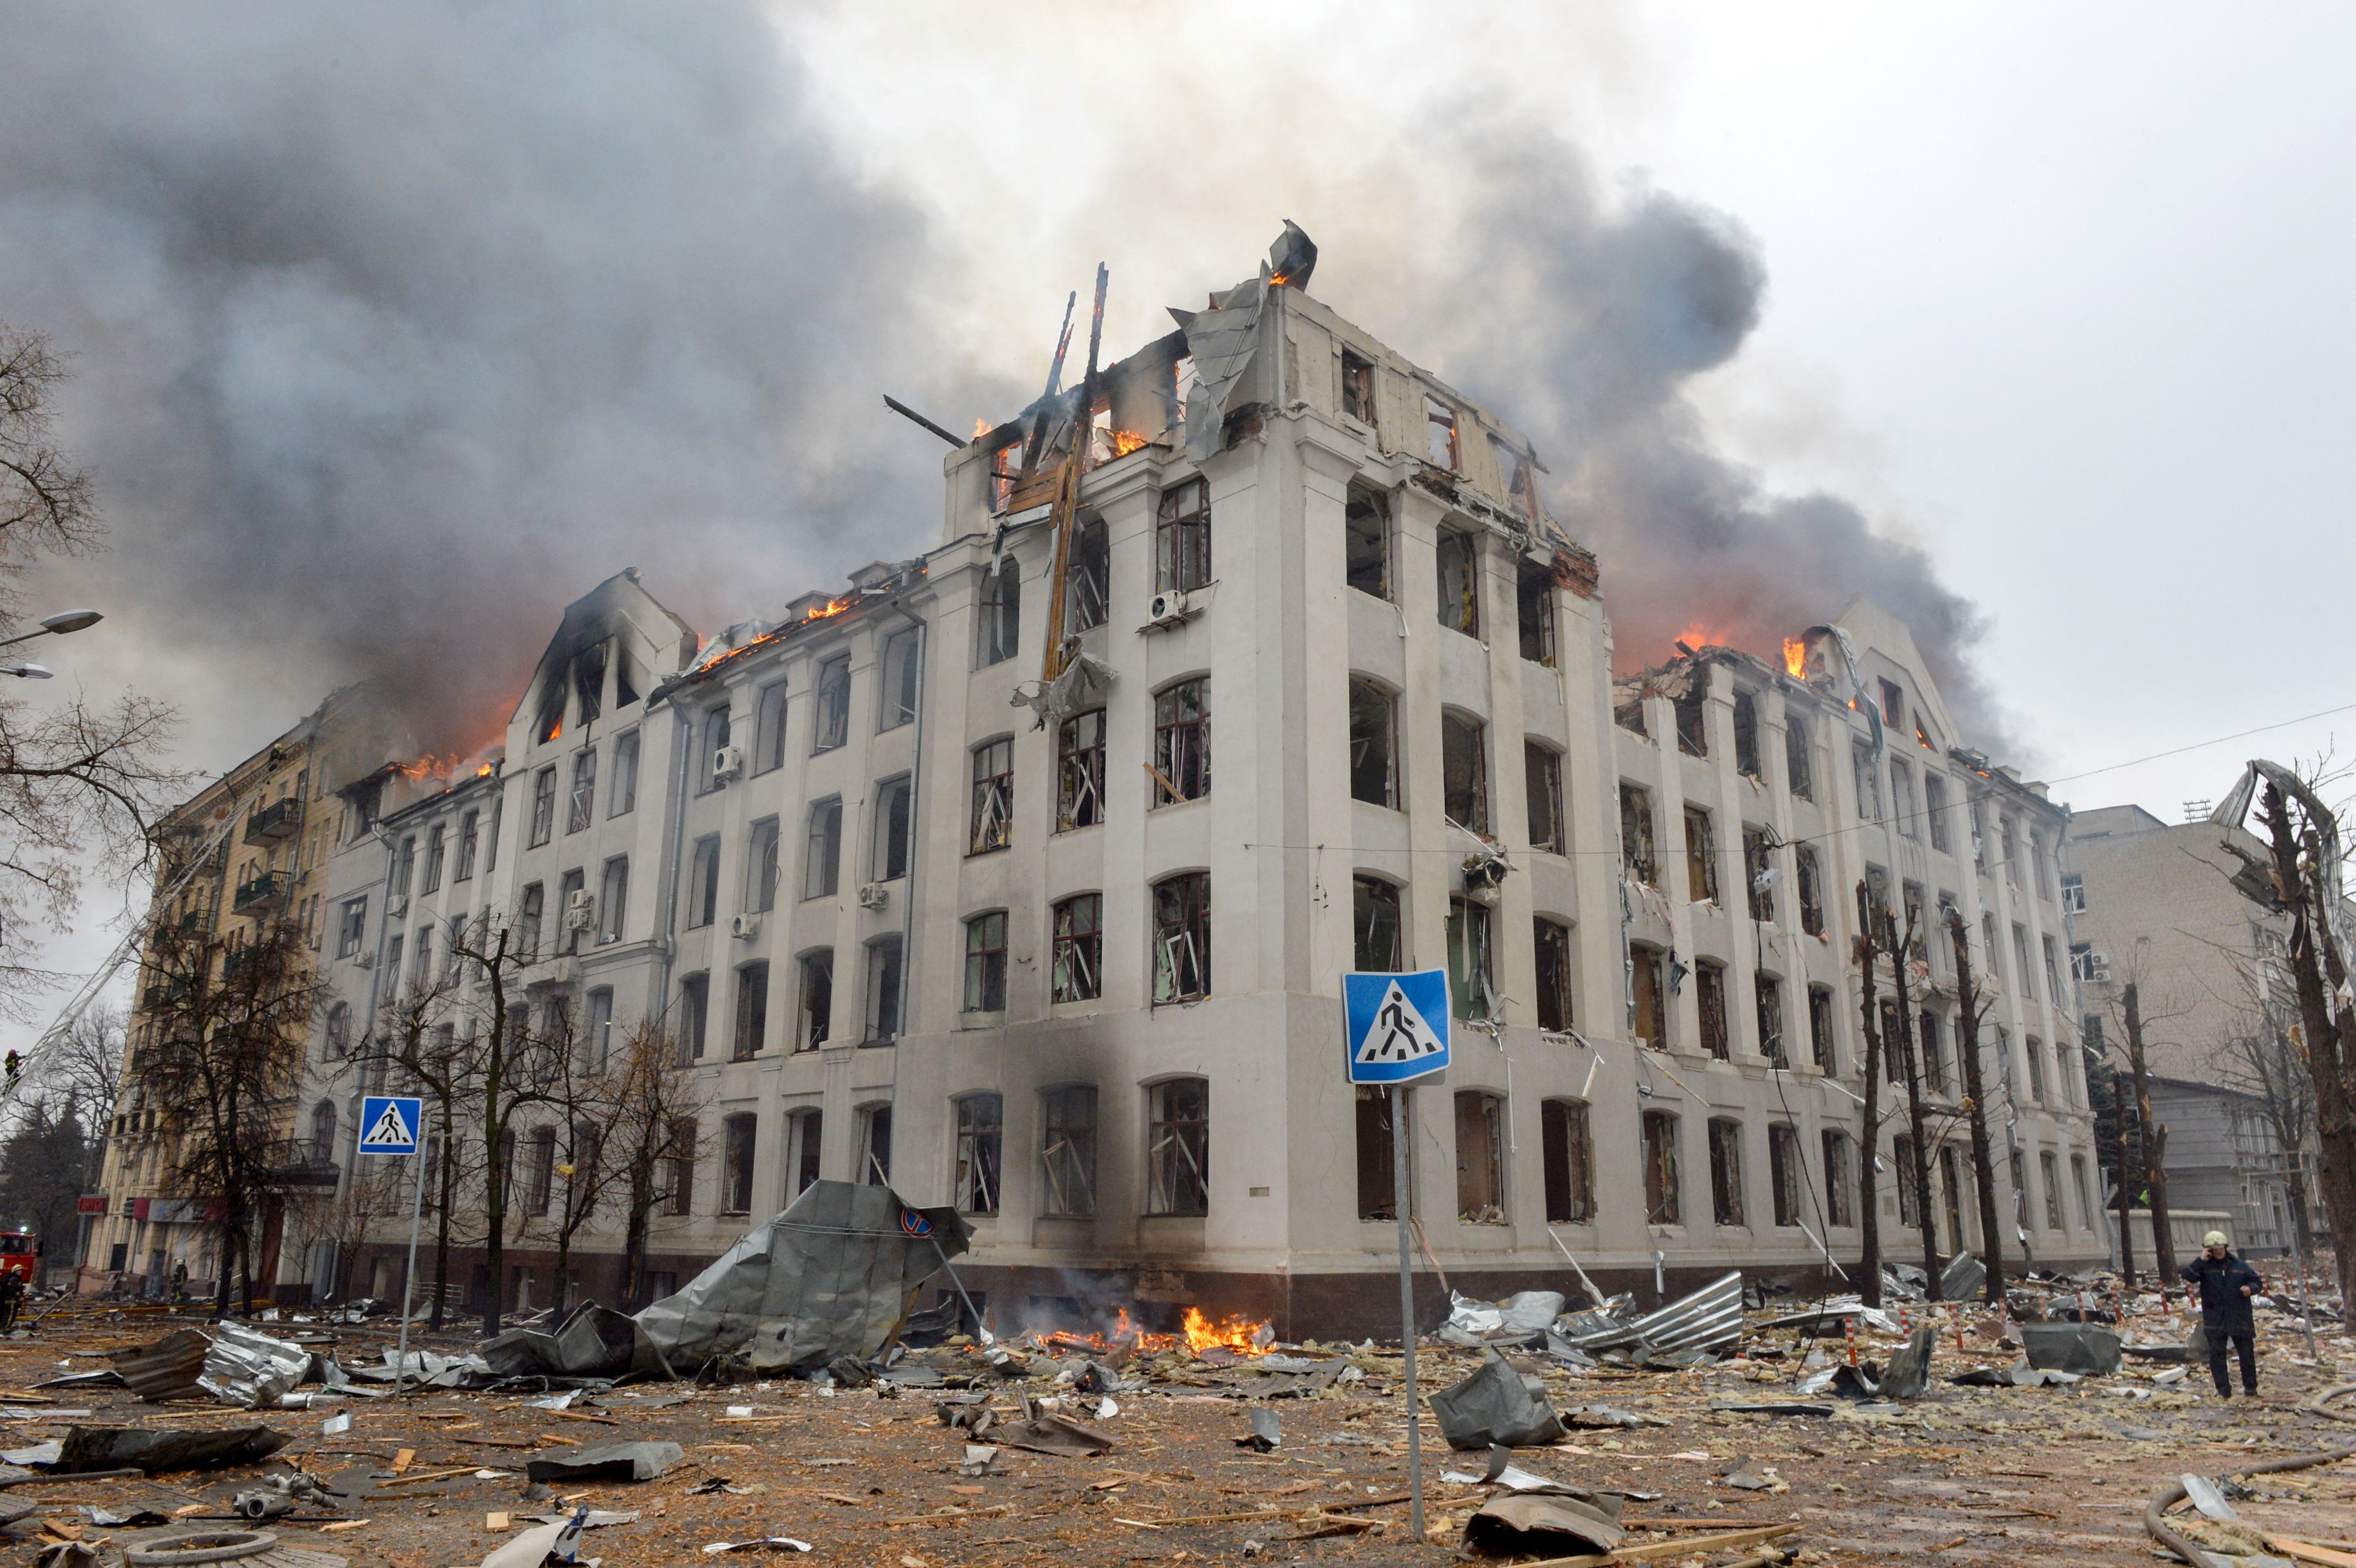 Buildings on fire in Kharkiv, Ukraine, on March 2.